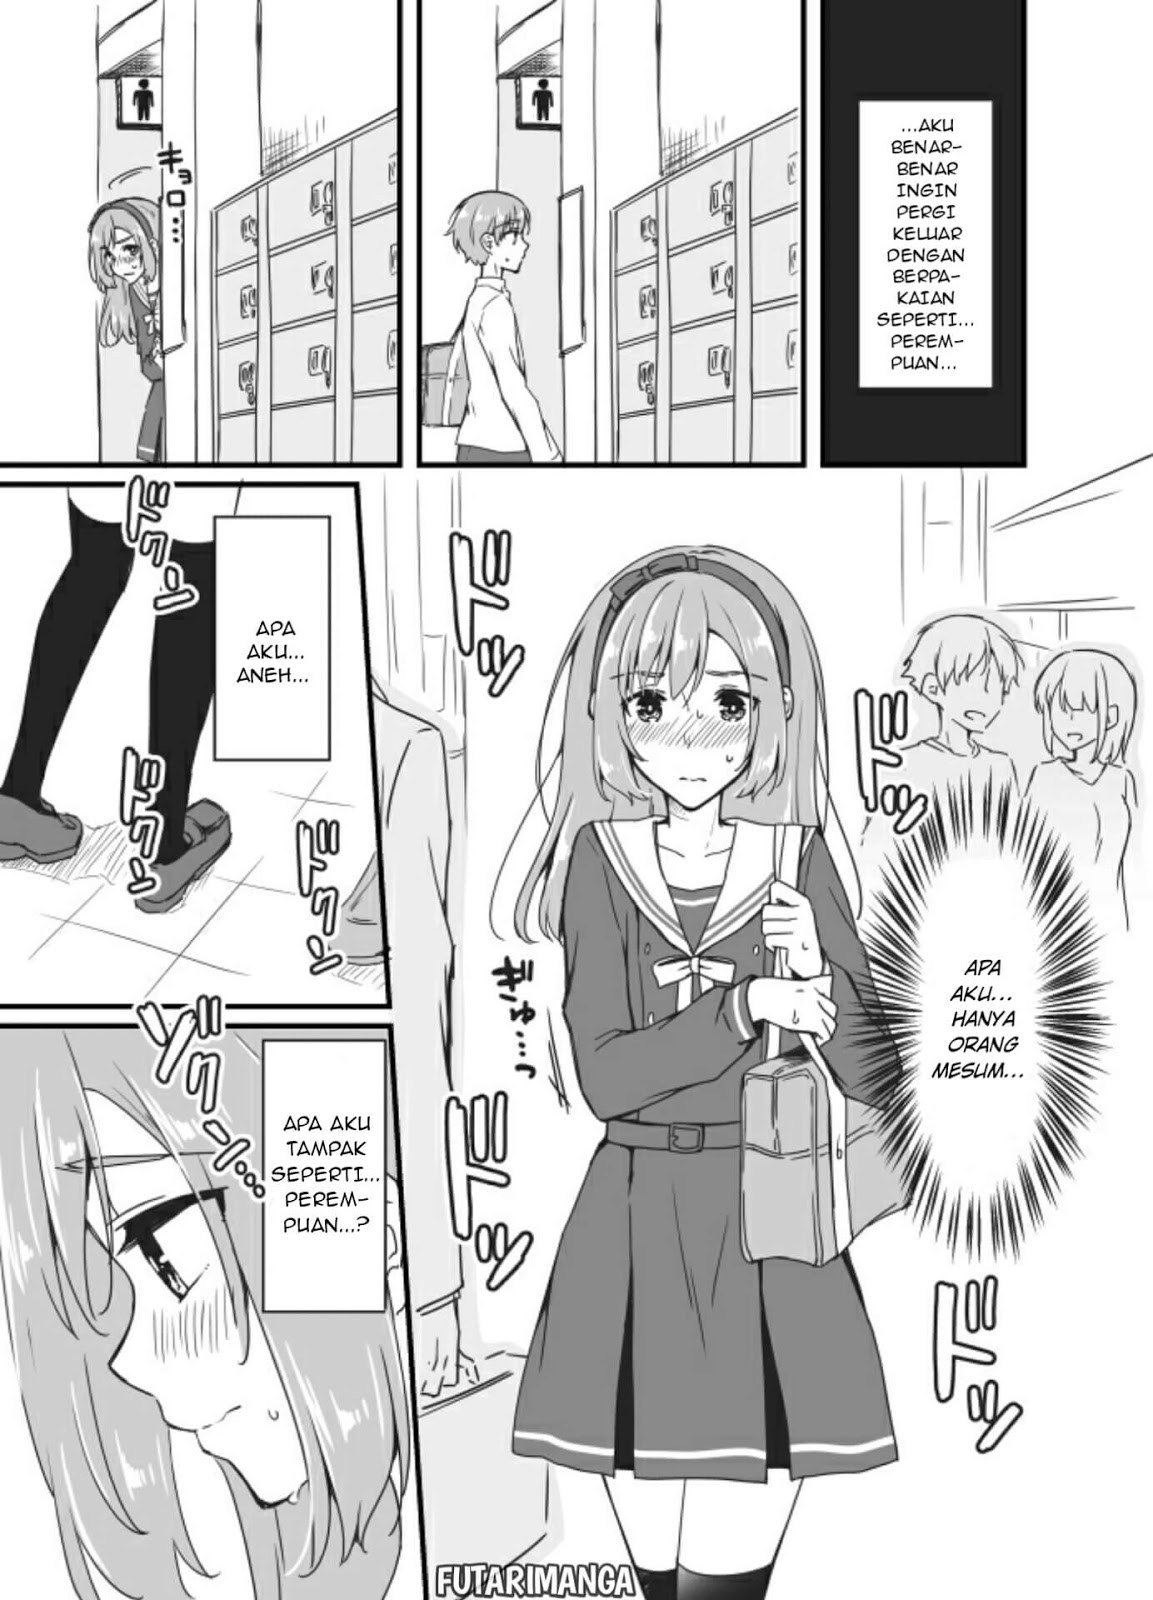 Baca Sakura-chan to Amane-kun Chapter 2  - GudangKomik